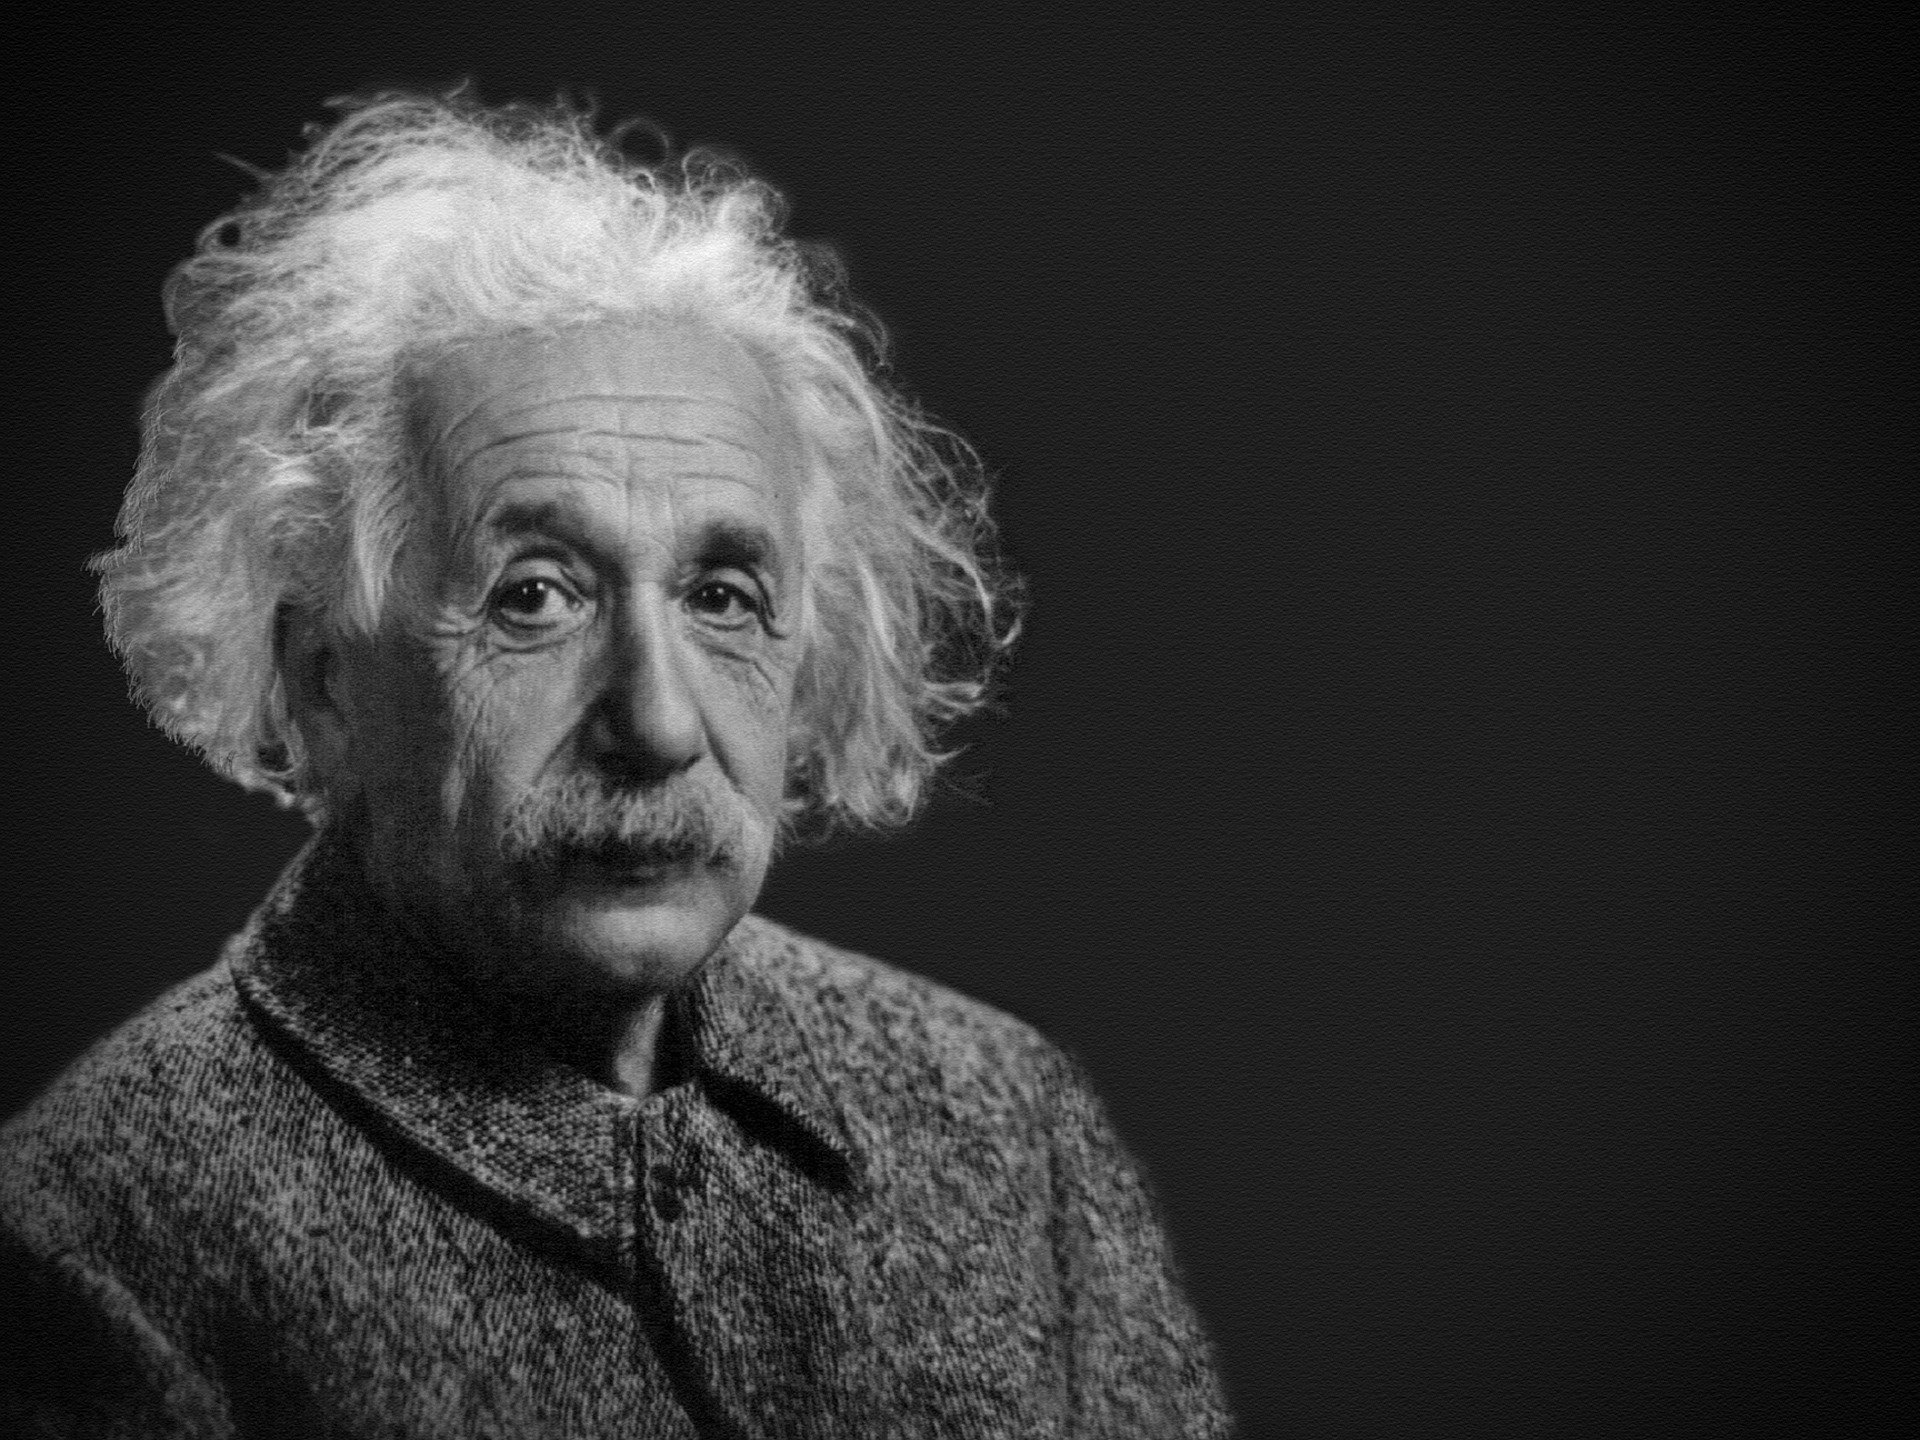 爱因斯坦日记对中国的评价，为何让人愤怒？他究竟写了什么？